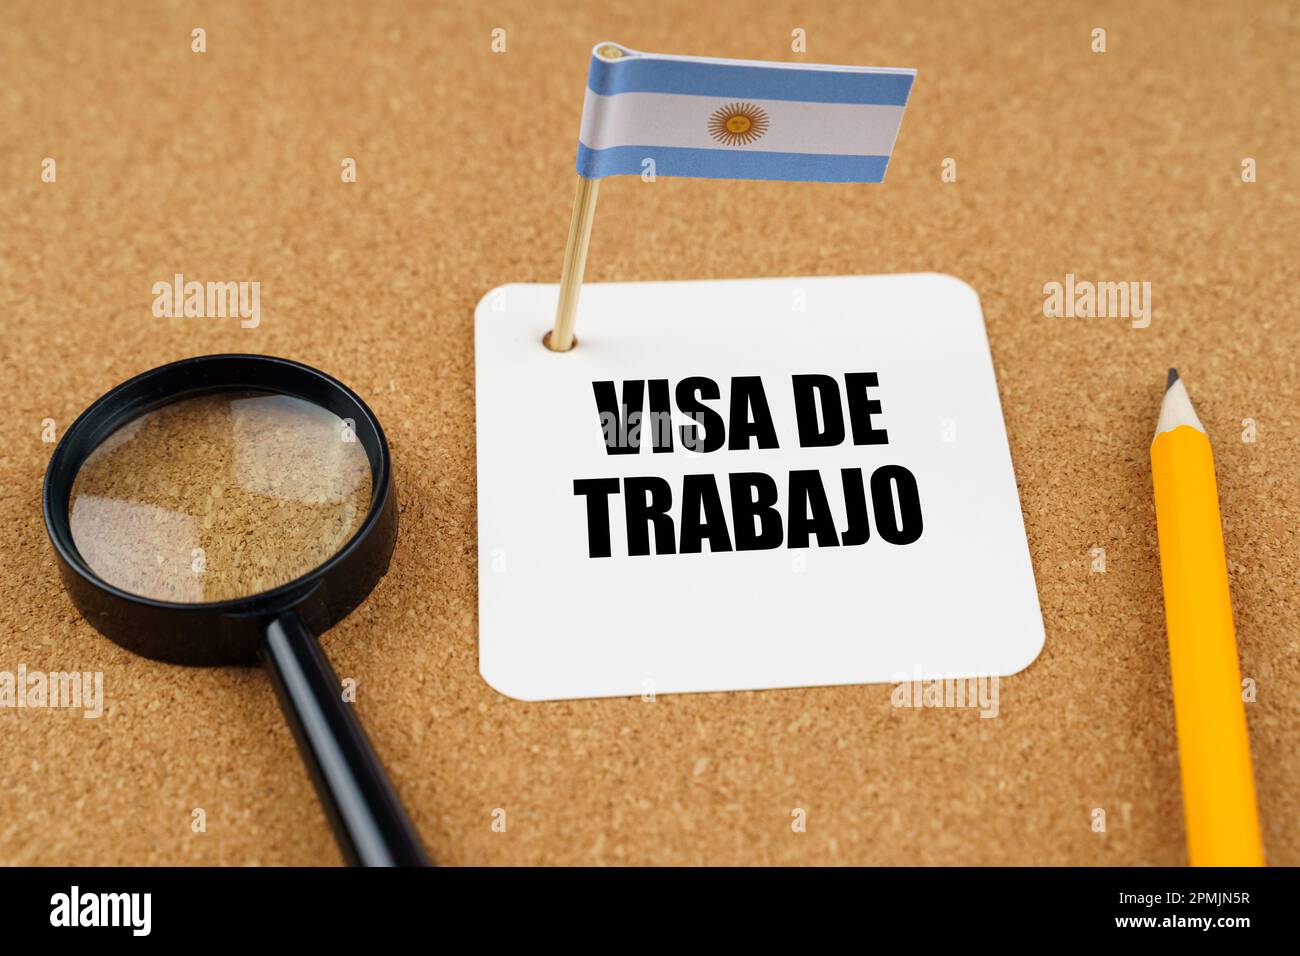 Auf dem Tisch liegt die argentinische Flagge, ein Bleistift, eine Lupe und ein Blatt Papier mit einer Inschrift auf Spanisch, die ins Englische übersetzt wird Stockfoto